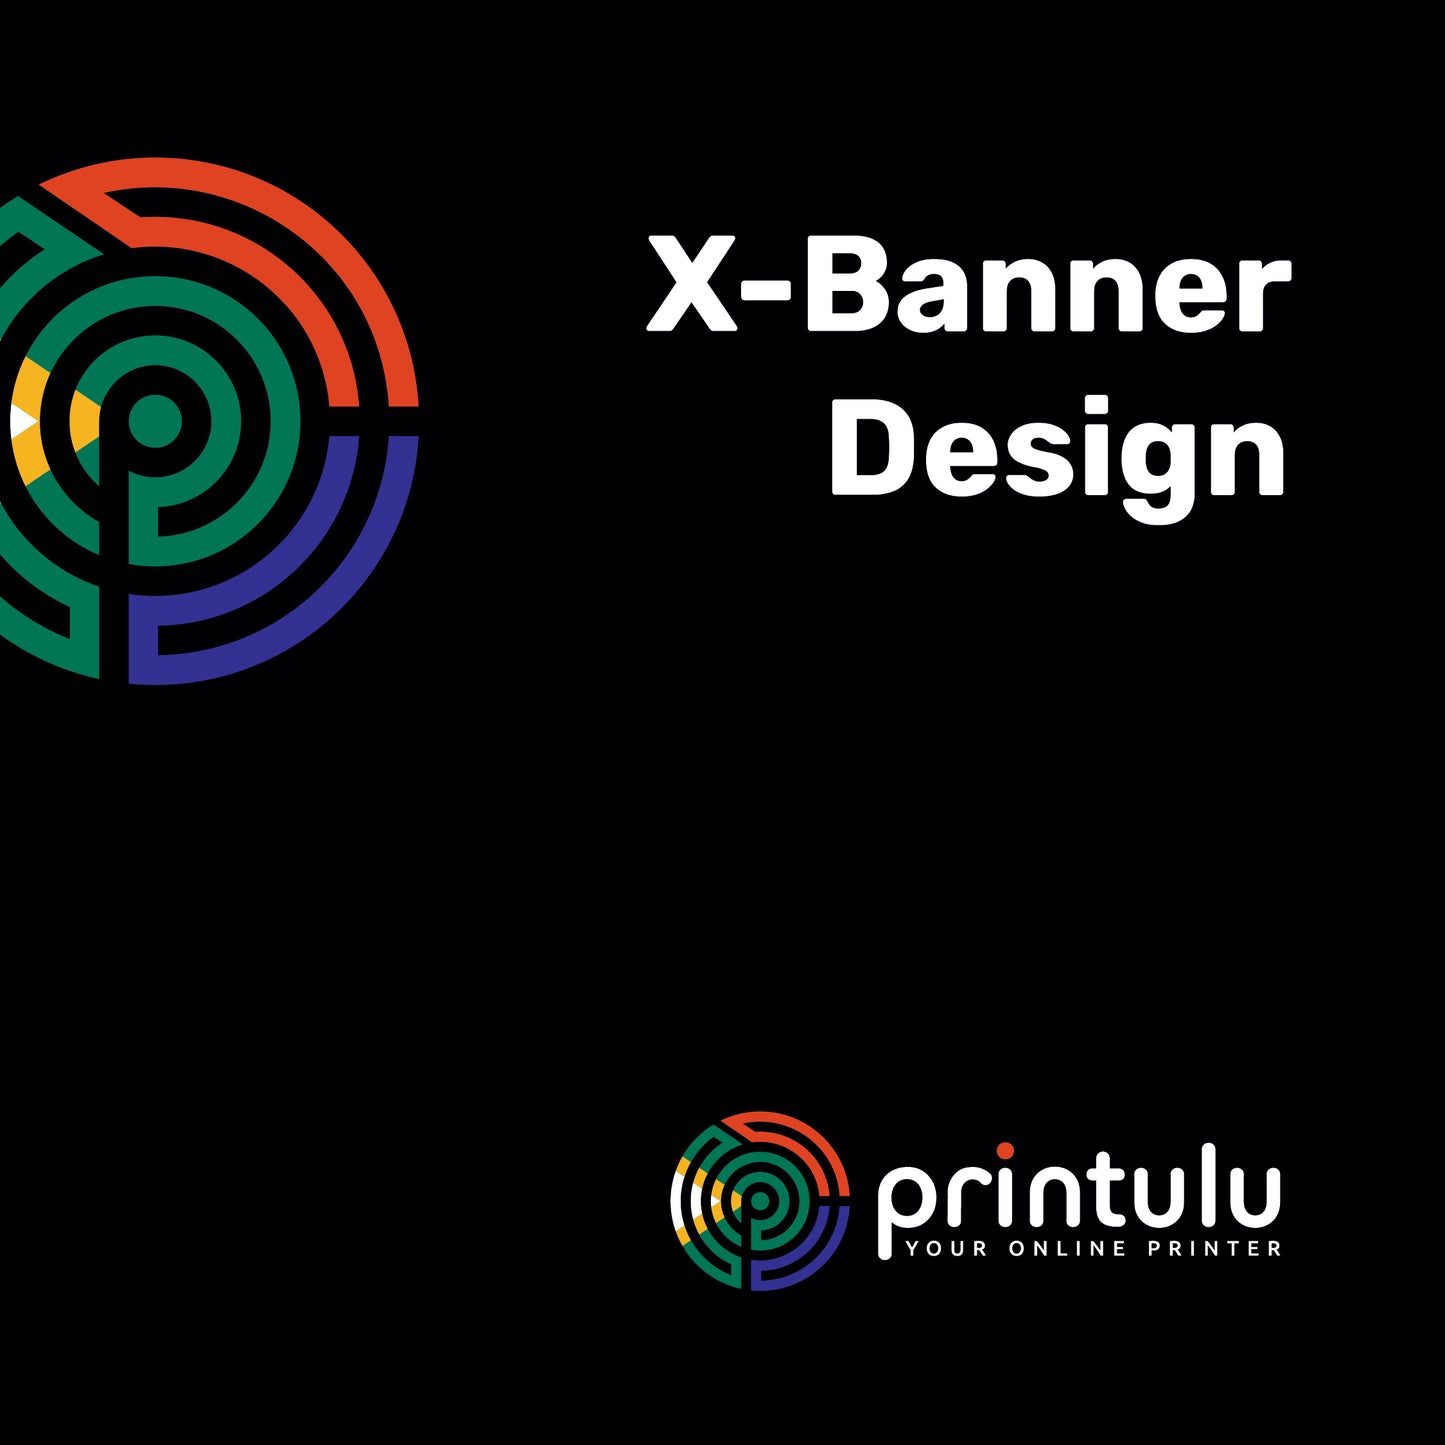 X-Banner Design